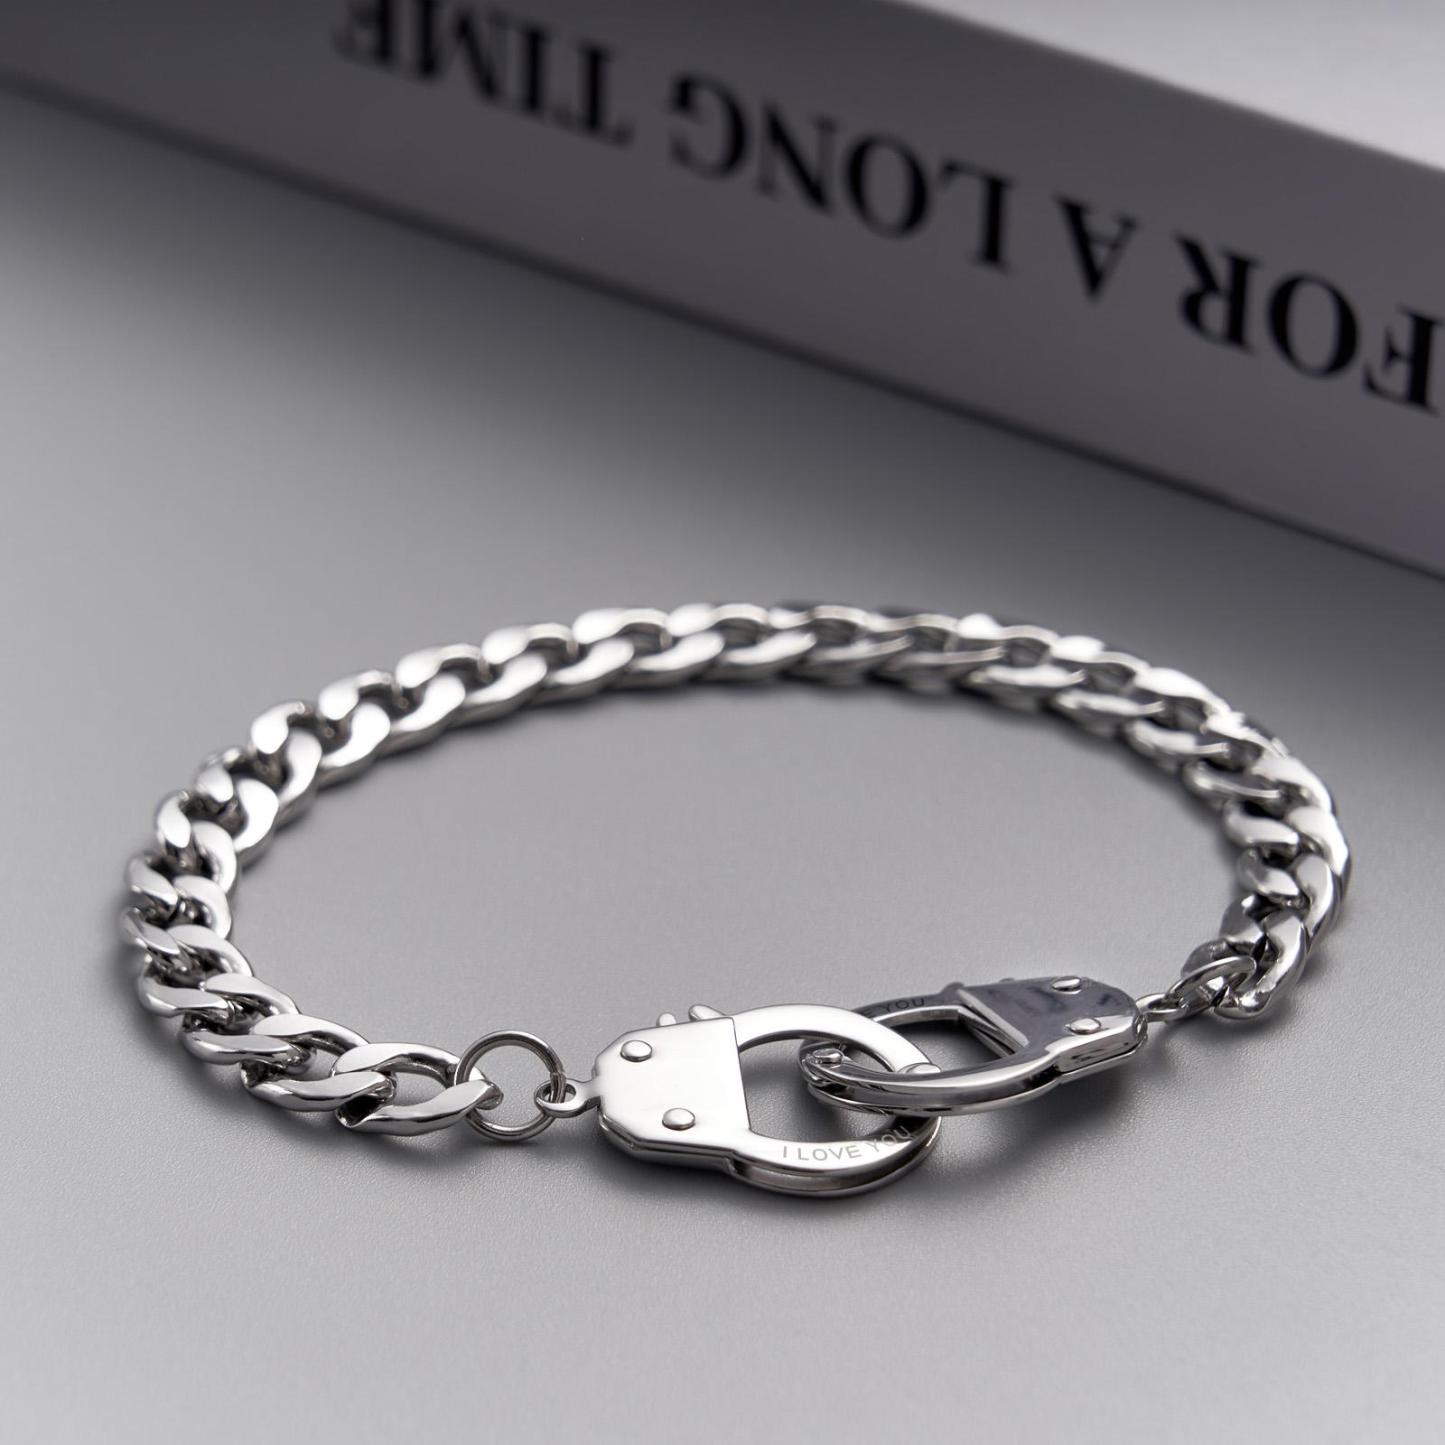 Handcuffs Engraved Bracelet Personalized Unique Shackle Chain Bracelet For Couples - soufeelau